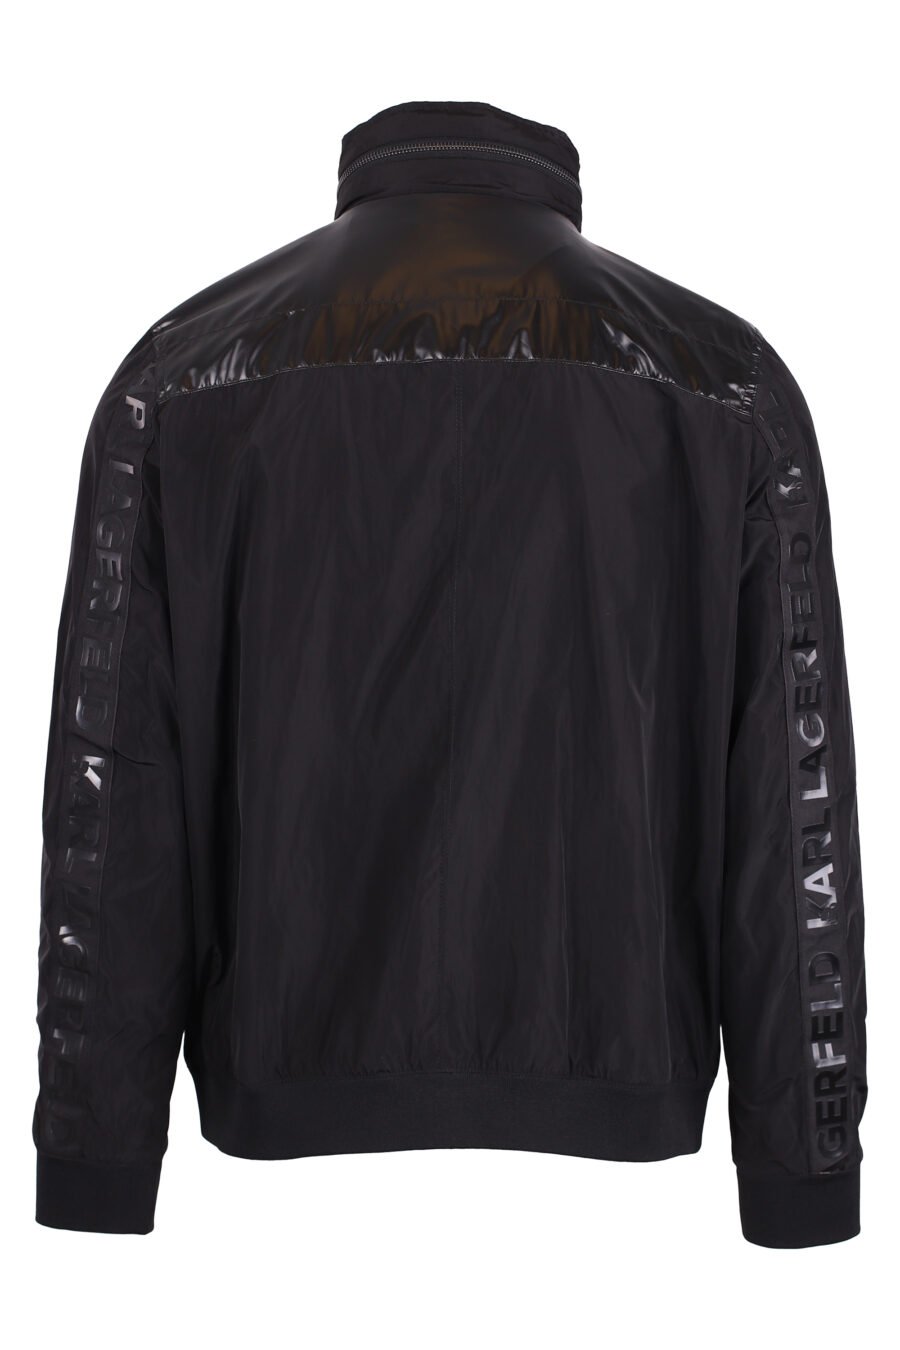 Schwarze Jacke mit Reißverschluss und schwarzem 3d weißem Logo - IMG 4321